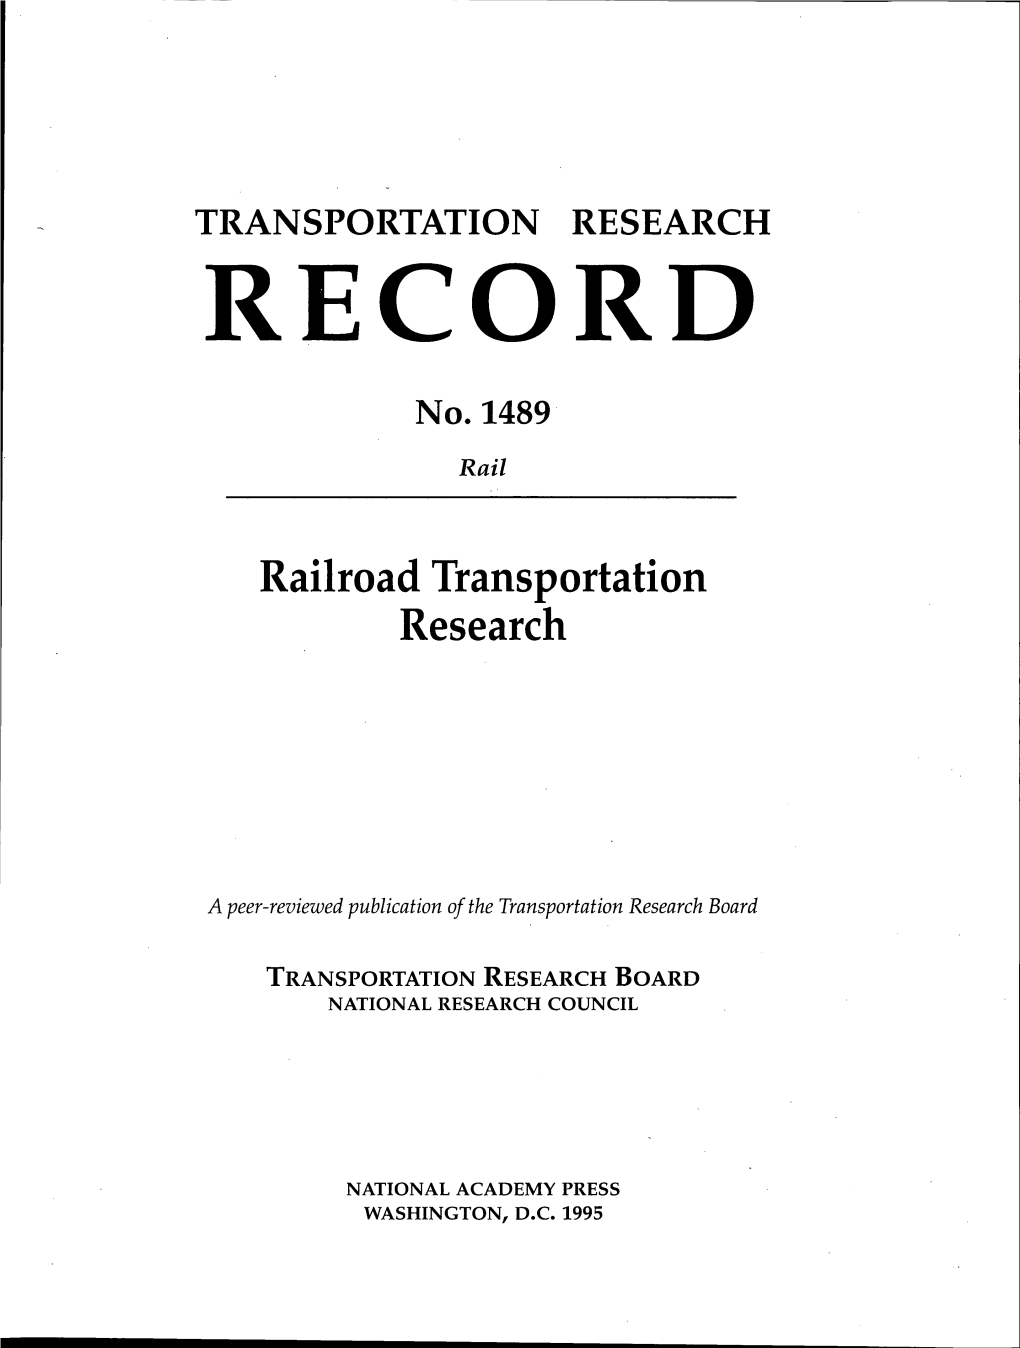 Transportation Research Record No. 1489, Railroad Transportation Research